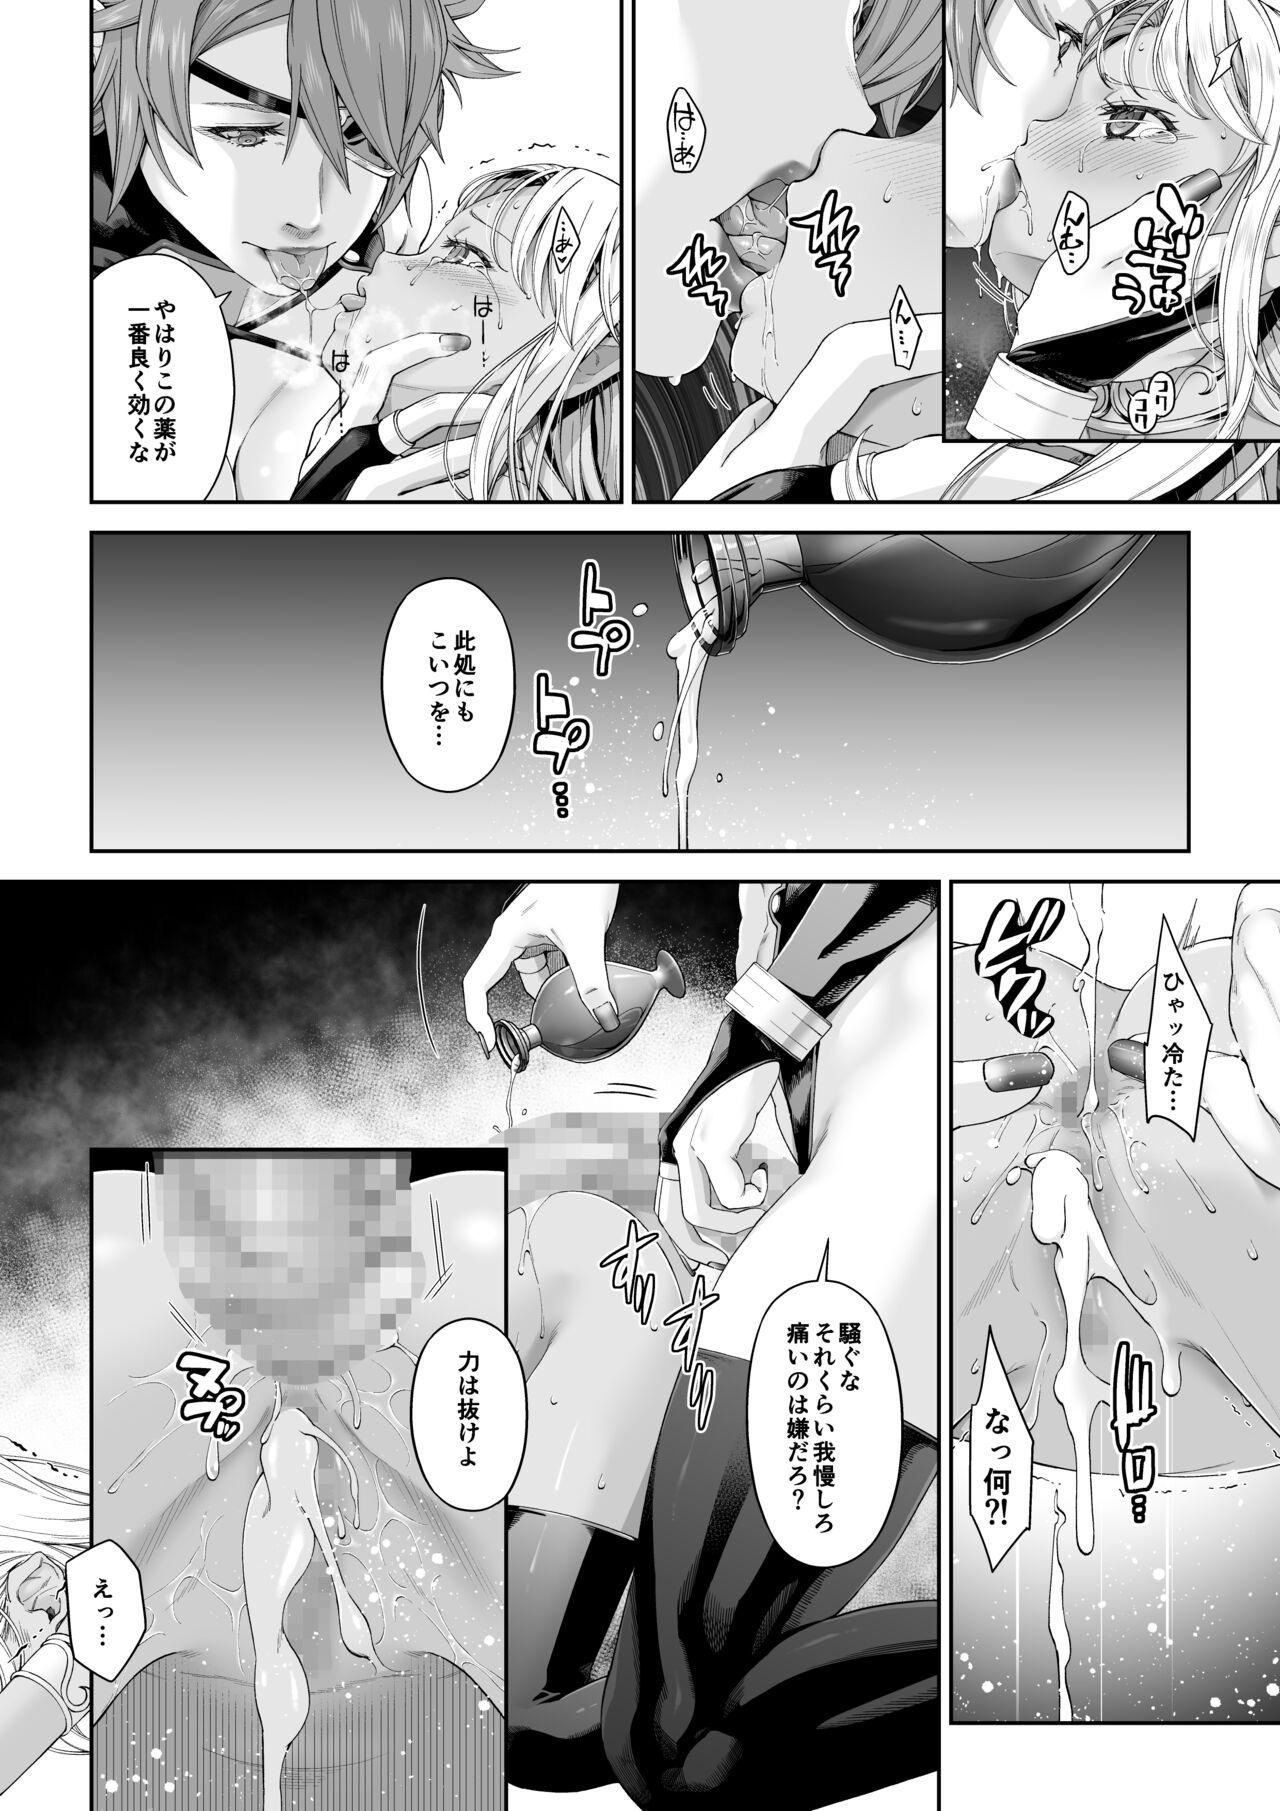 Cdzinha [DASHIMAKITAMAGO] Kakedashi Boukensha no Matsuro 4 [Ningen no ura shakai] Bōken-sha ni akogareta Erufu shimai - 2 - Original Deep Throat - Page 5